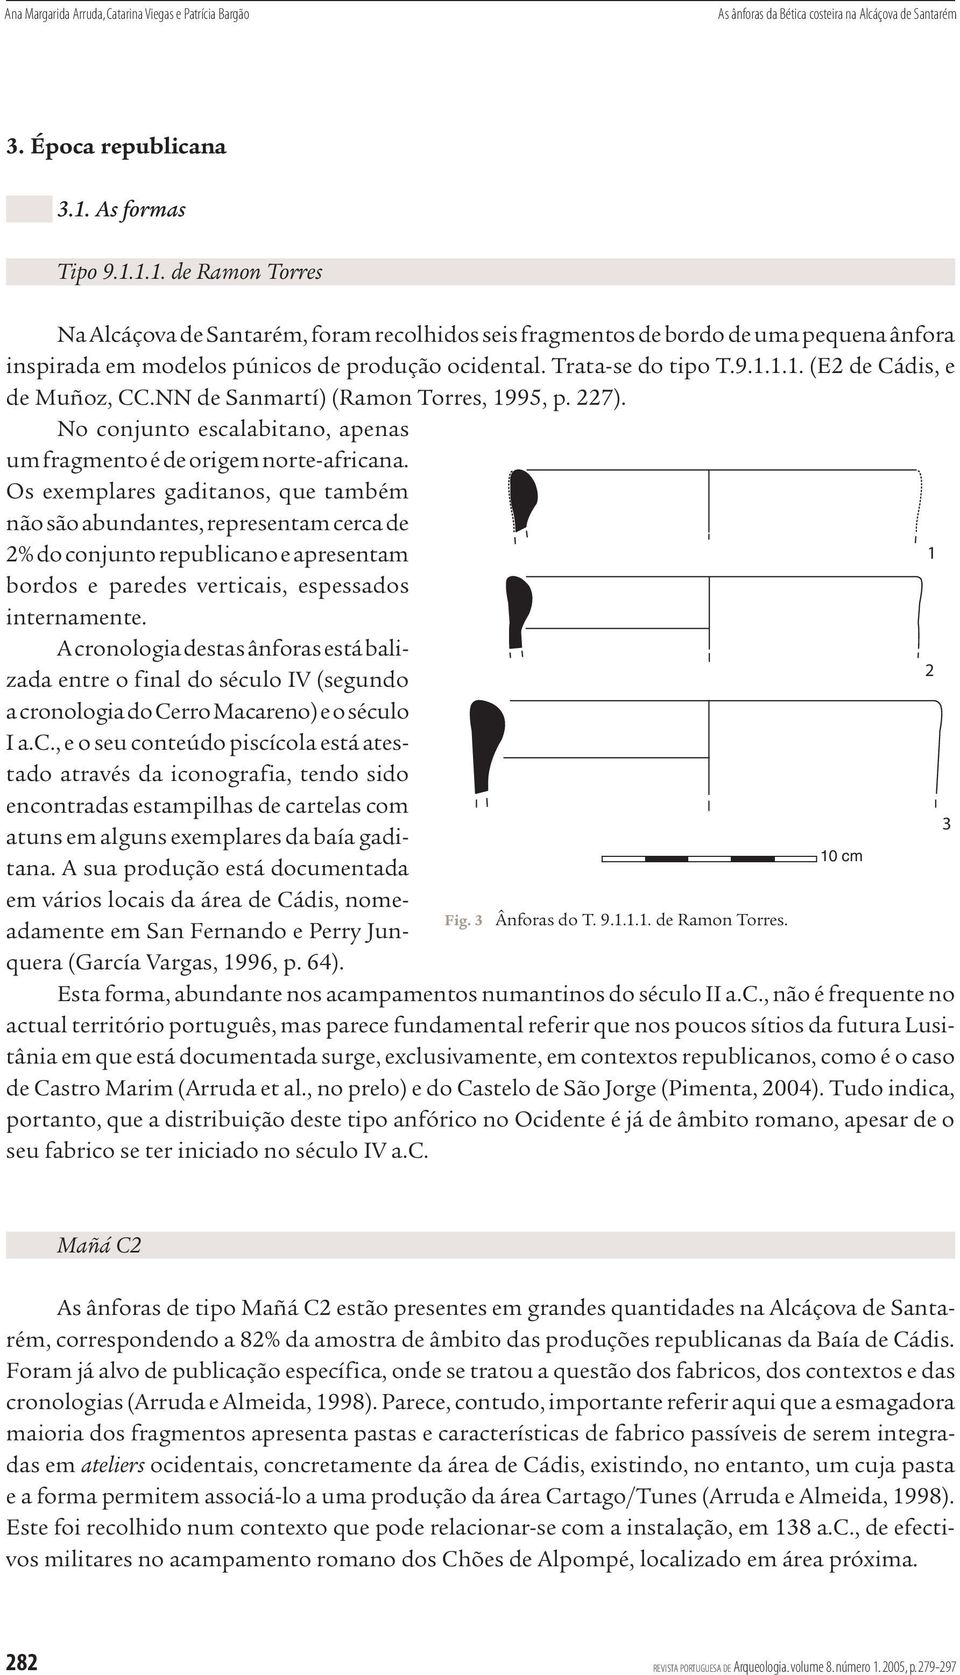 9.1.1.1. (E2 de Cádis, e de Muñoz, CC.NN de Sanmartí) (Ramon Torres, 1995, p. 227). No conjunto escalabitano, apenas um fragmento é de origem norte-africana.